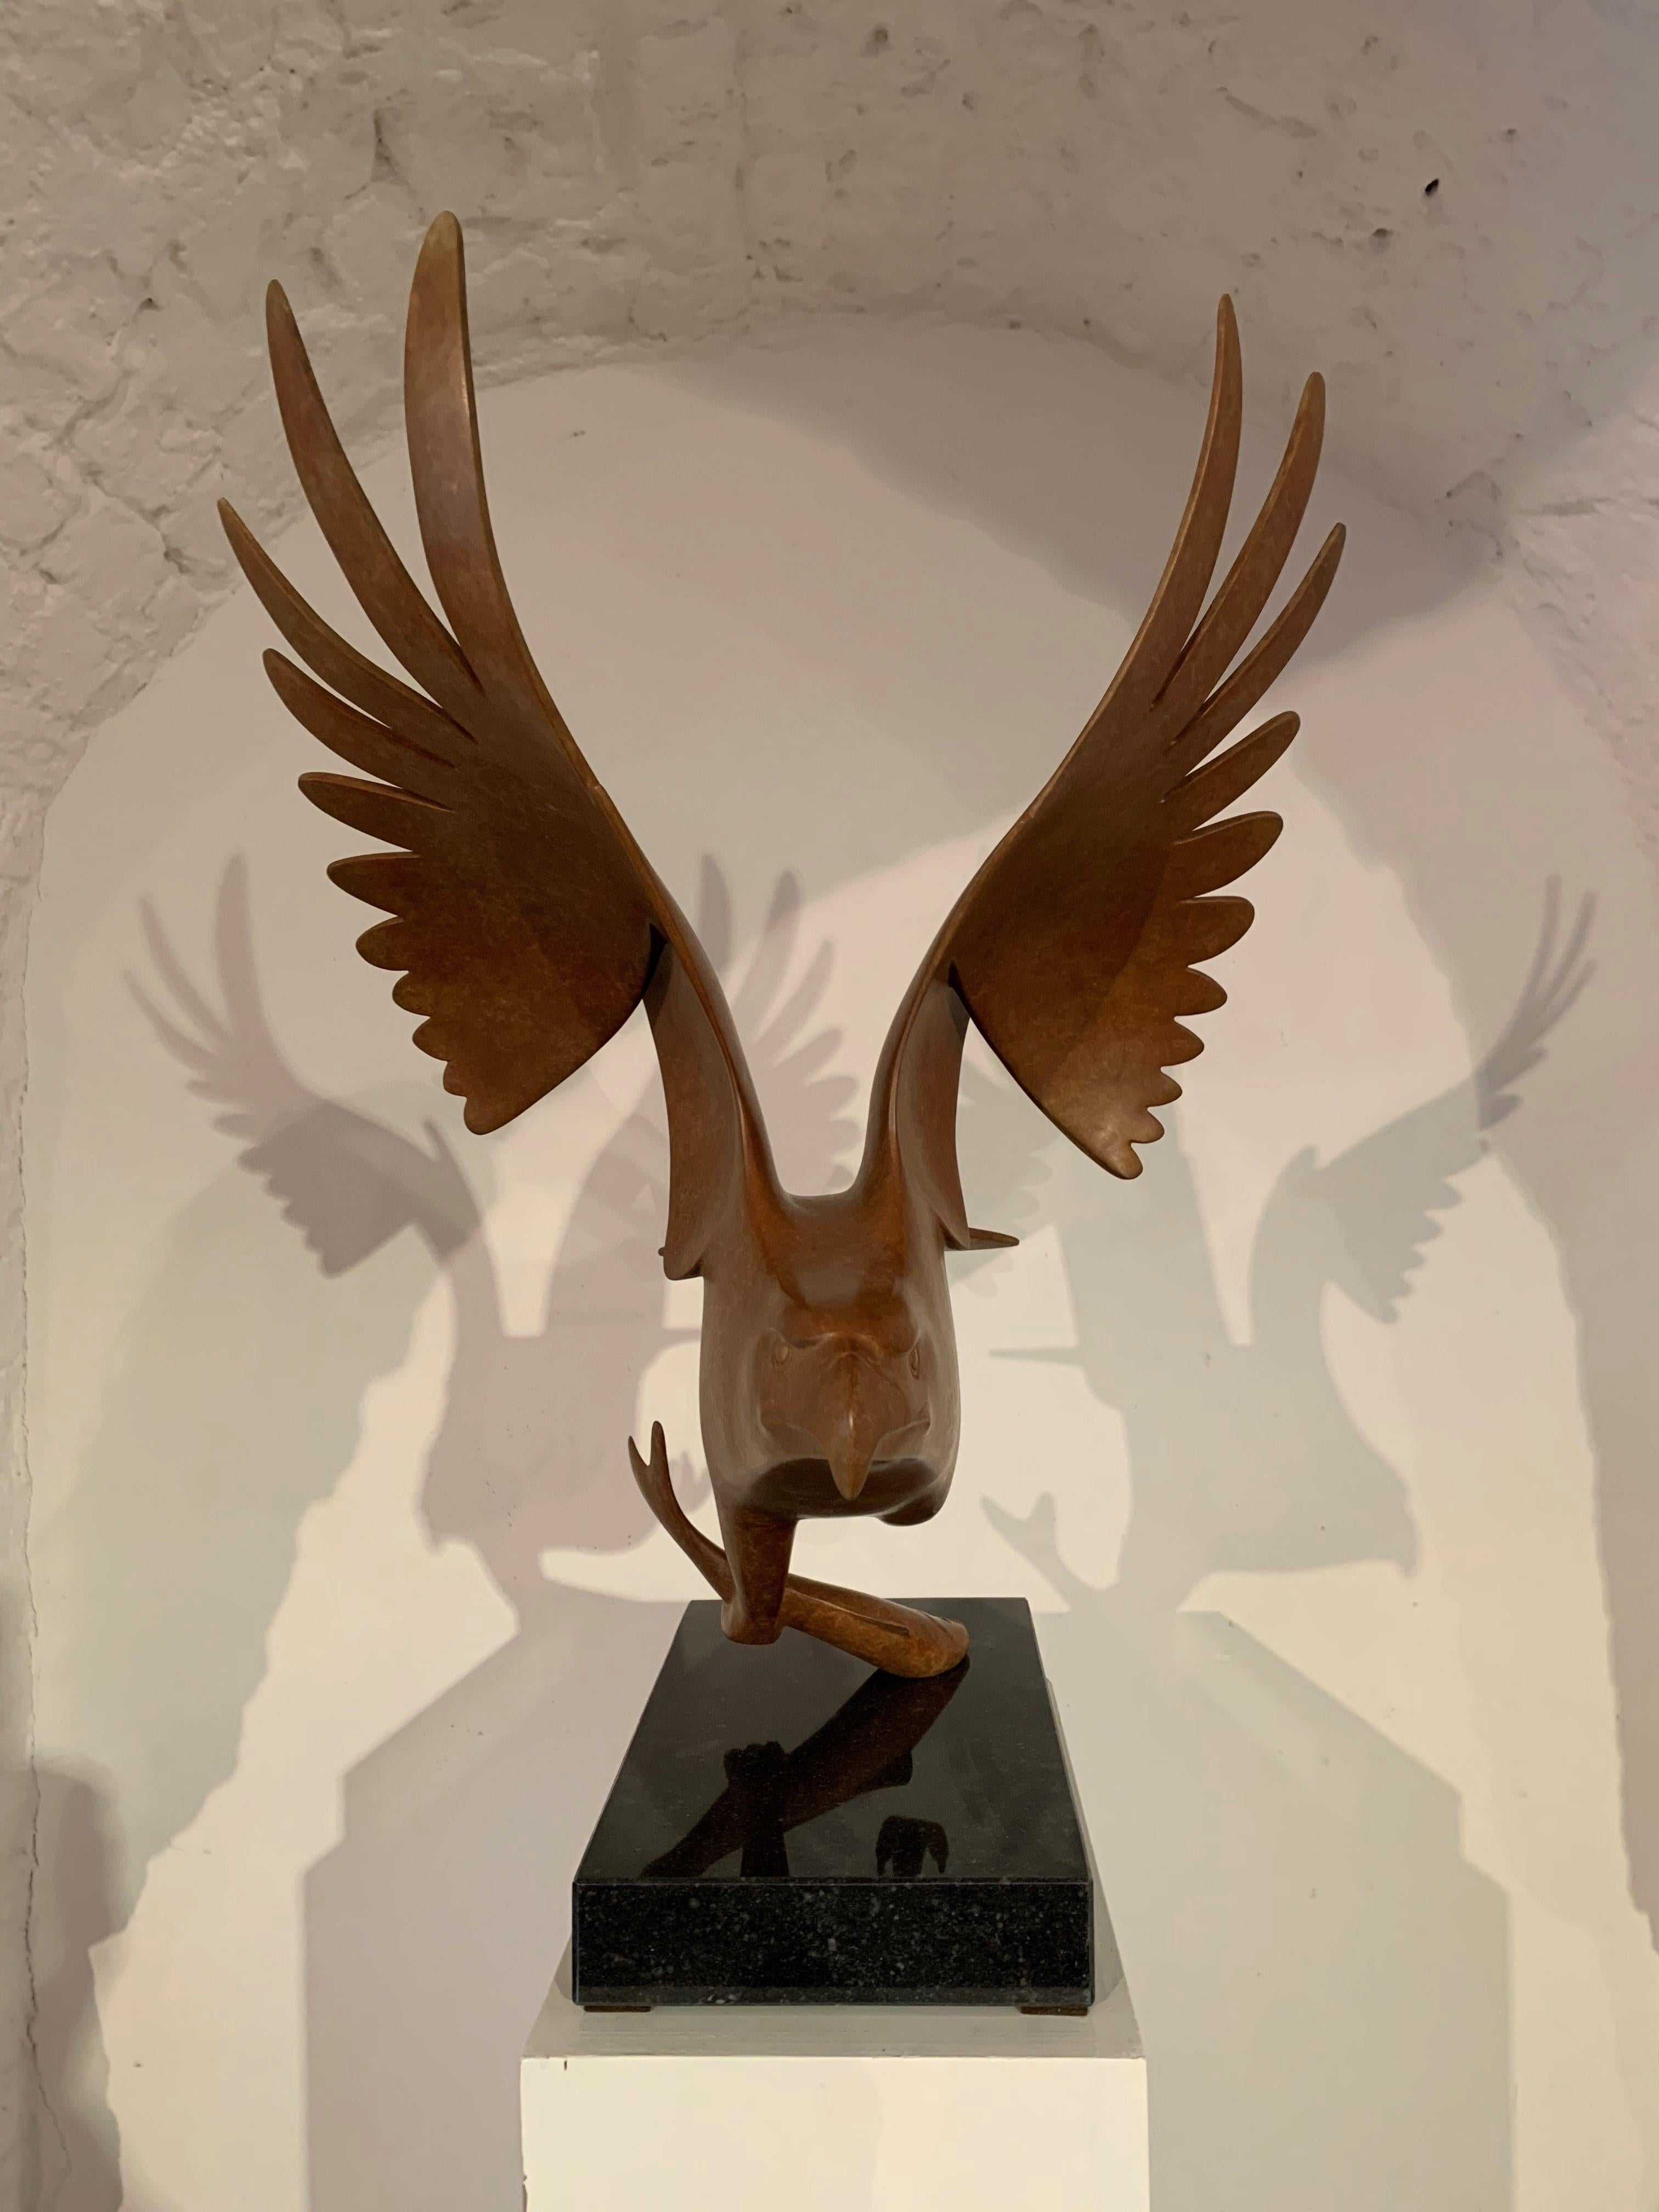 Roofvogel met Vis no. 1 Bird of Prey Bronze Sculpture Animal Contemporary - Gold Figurative Sculpture by Evert den Hartog